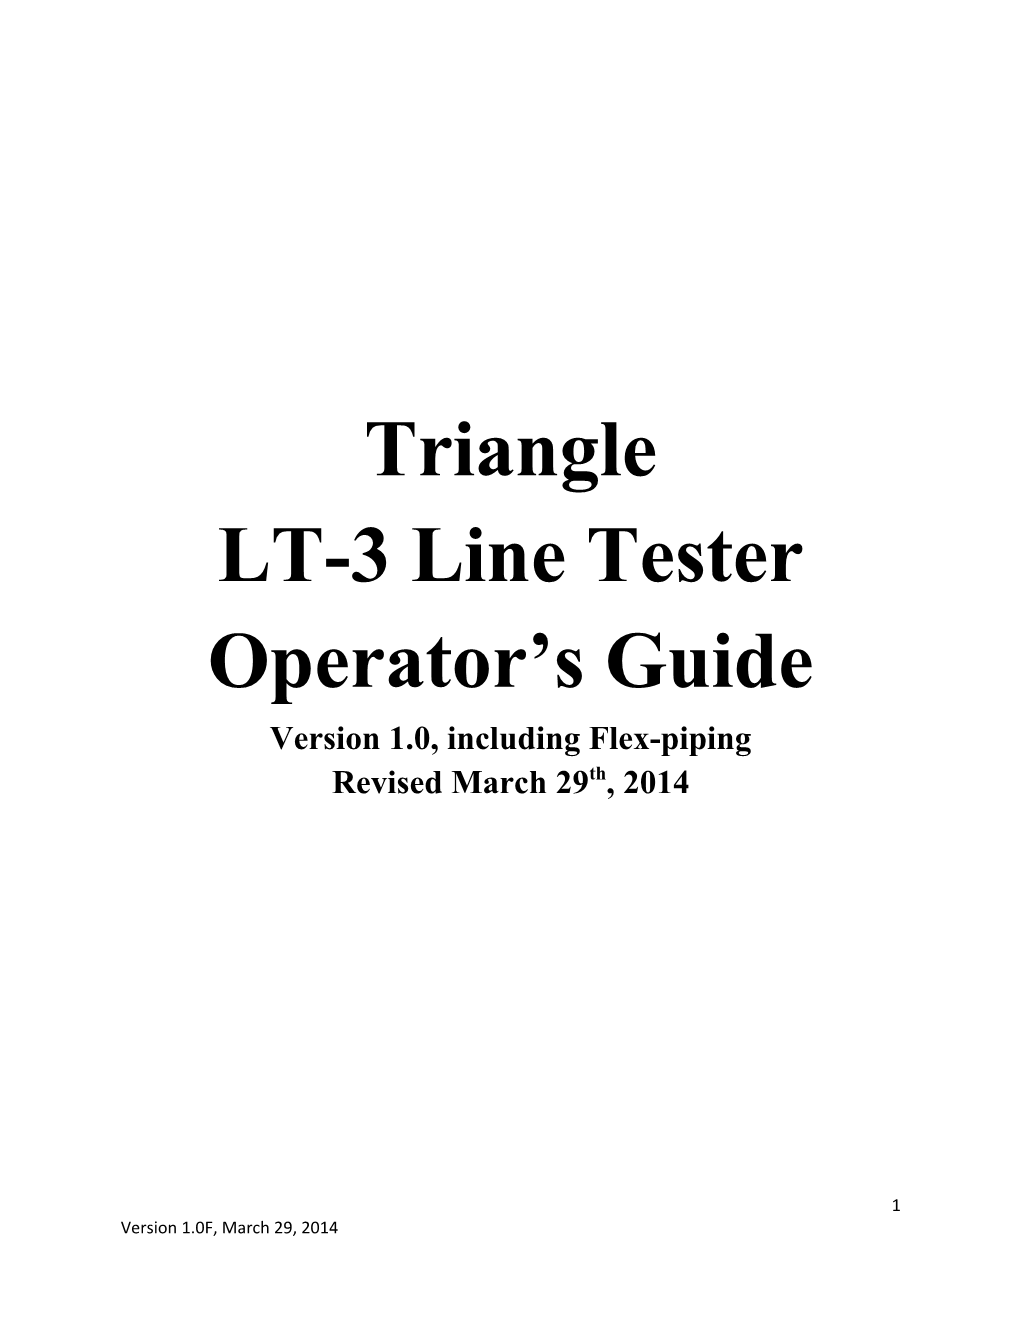 LT-3 Line Tester Operator S Guide